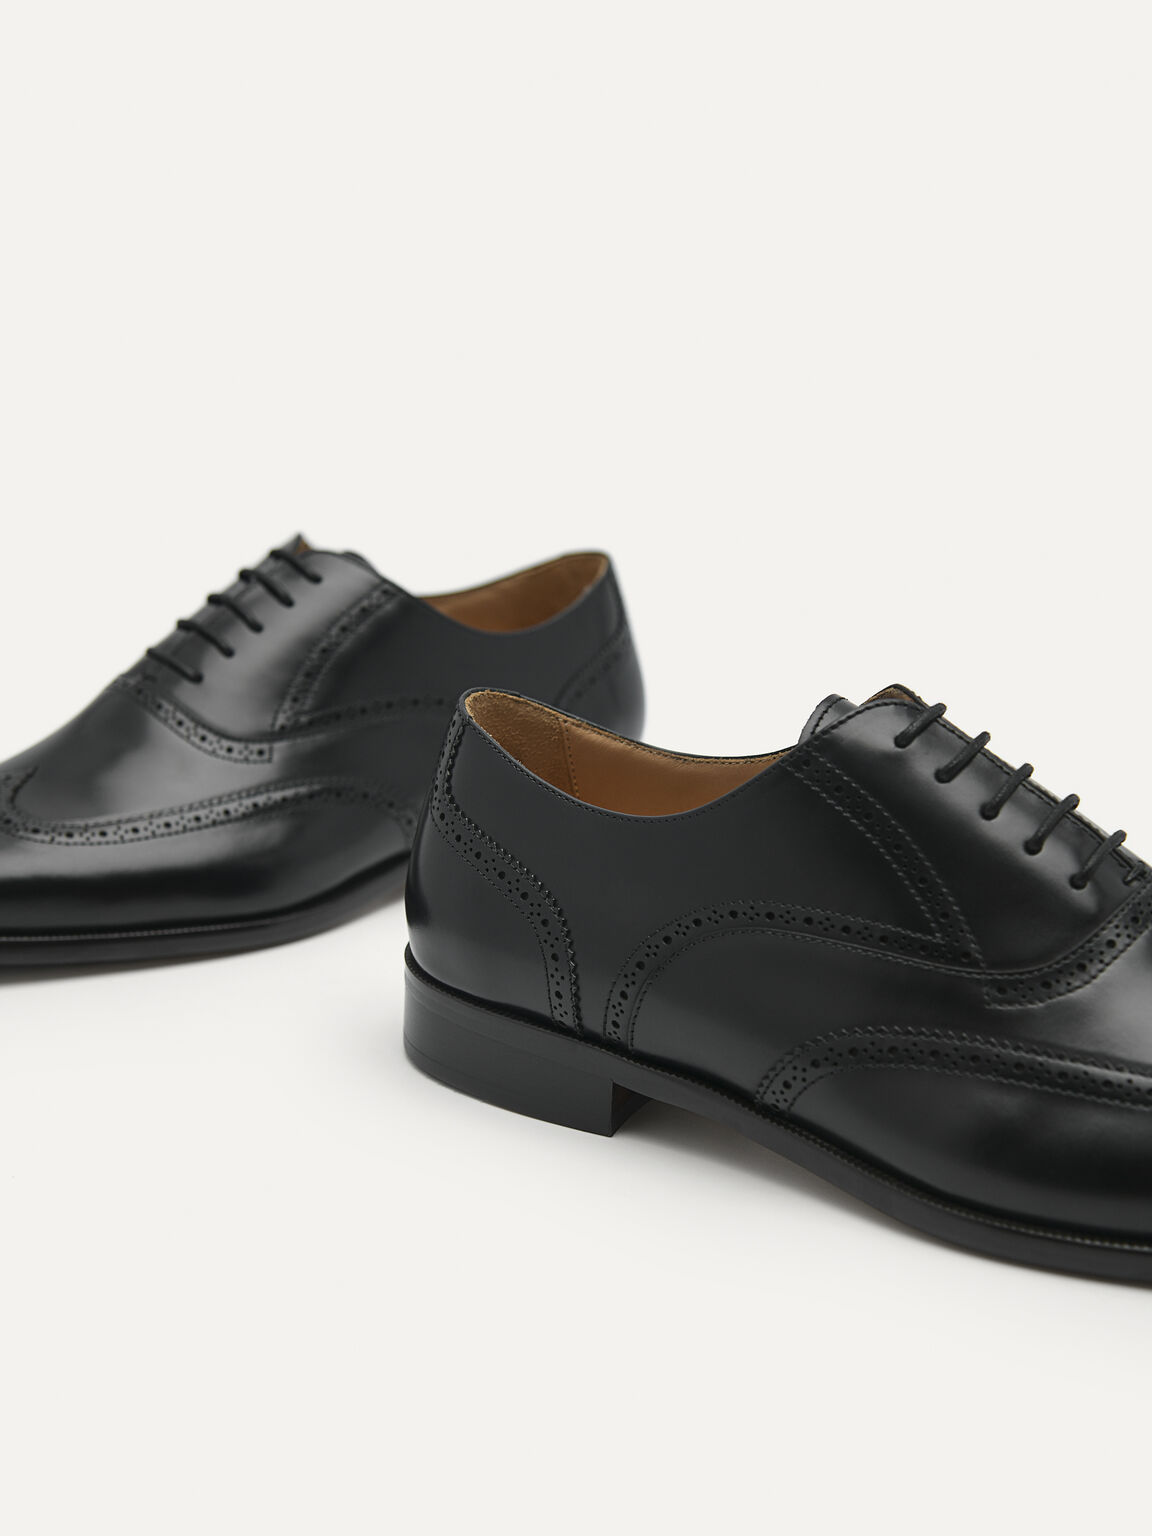 Black Baker Leather Oxford Shoes, Black